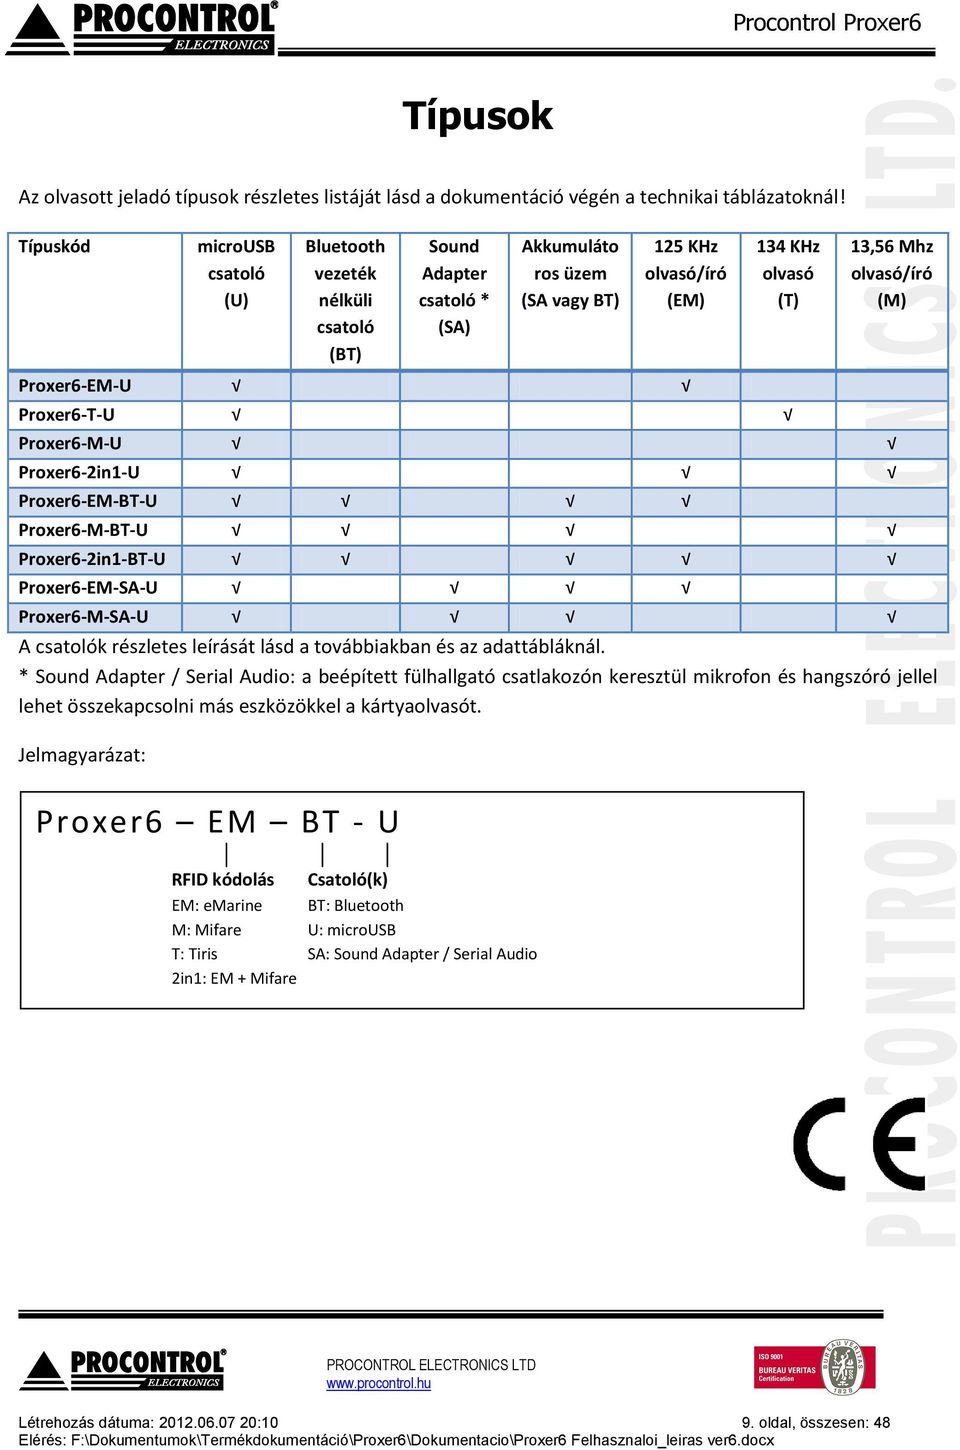 Proxer6-EM-U Proxer6-T-U Proxer6-M-U Proxer6-2in1-U Proxer6-EM-BT-U Proxer6-M-BT-U Proxer6-2in1-BT-U Proxer6-EM-SA-U Proxer6-M-SA-U A csatolók részletes leírását lásd a továbbiakban és az